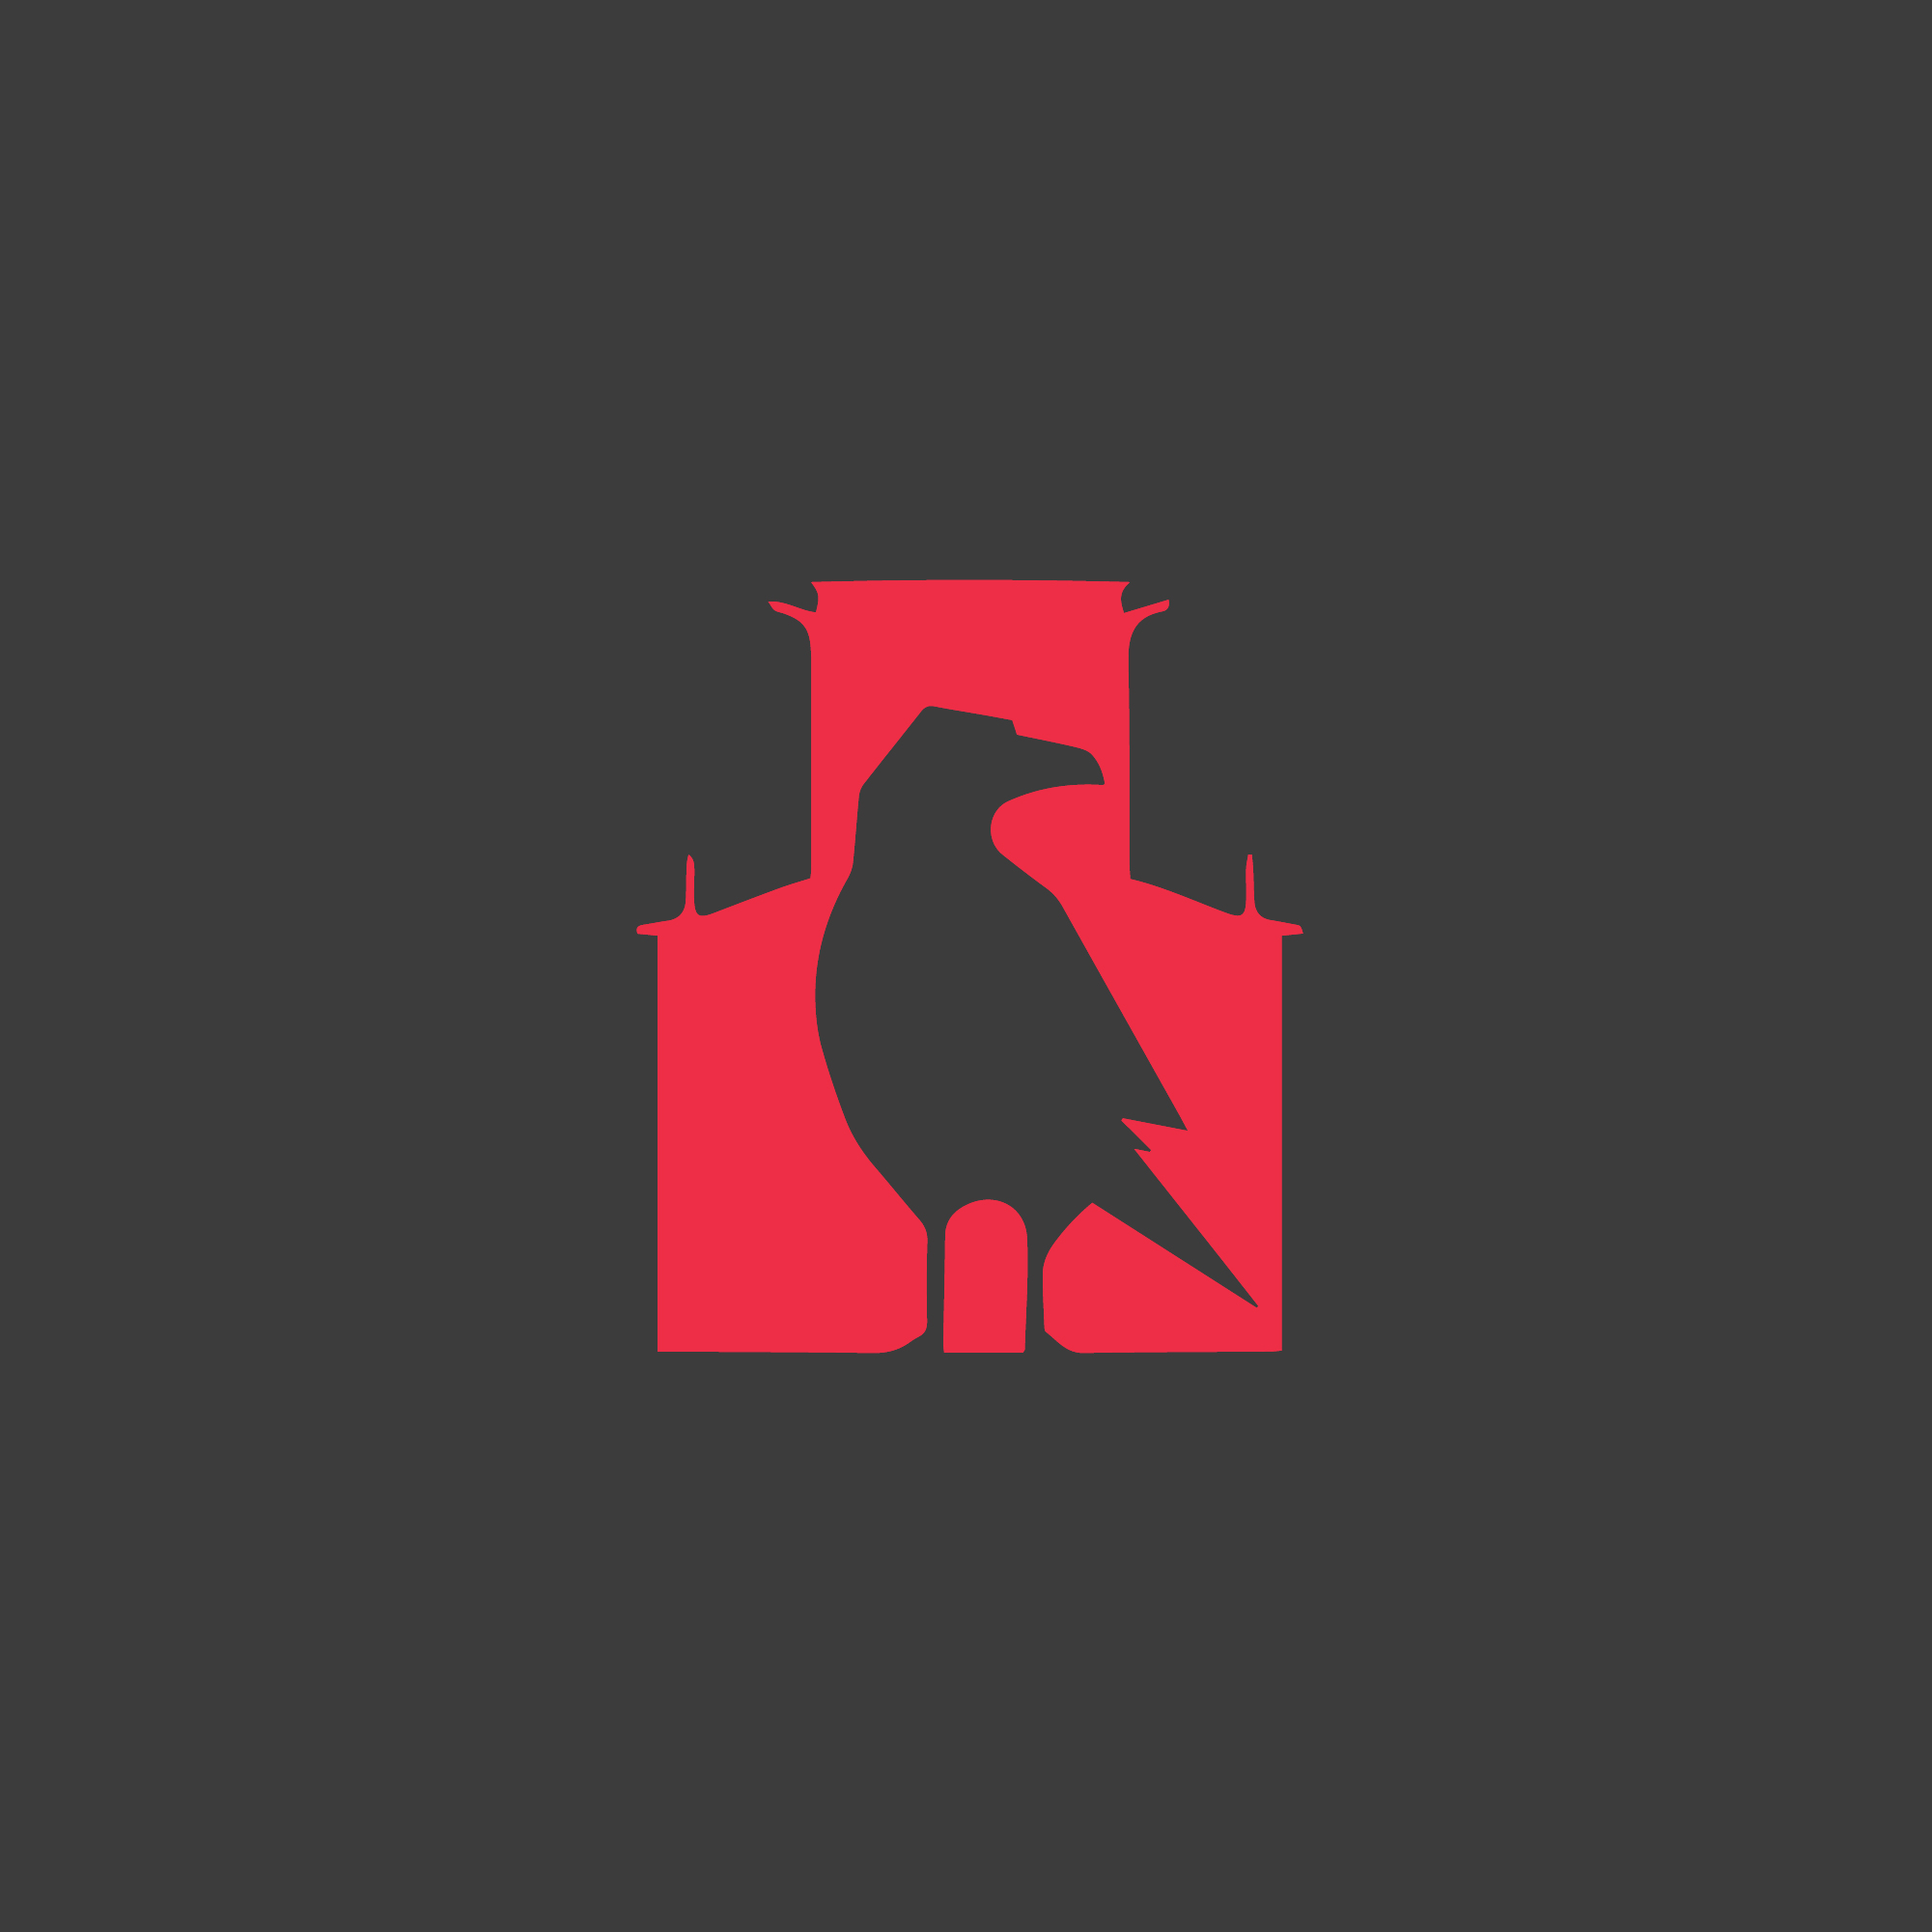 logo-design-black-white-minimalist-tower-raven-bird-simple-elegant-red-grey-dark